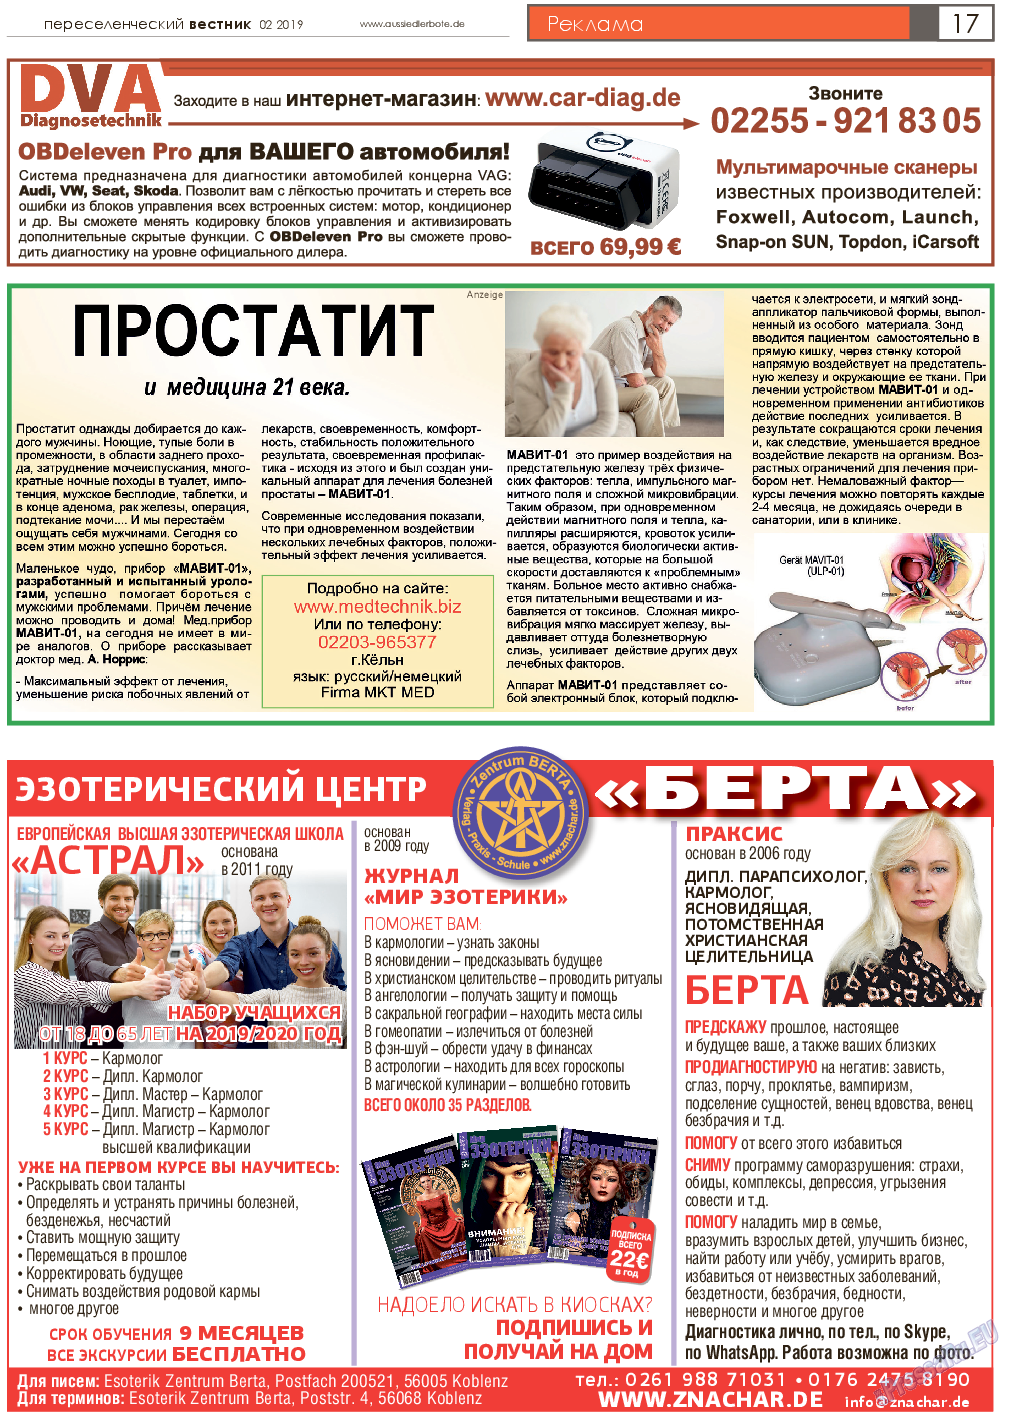 Переселенческий вестник (газета). 2019 год, номер 2, стр. 17